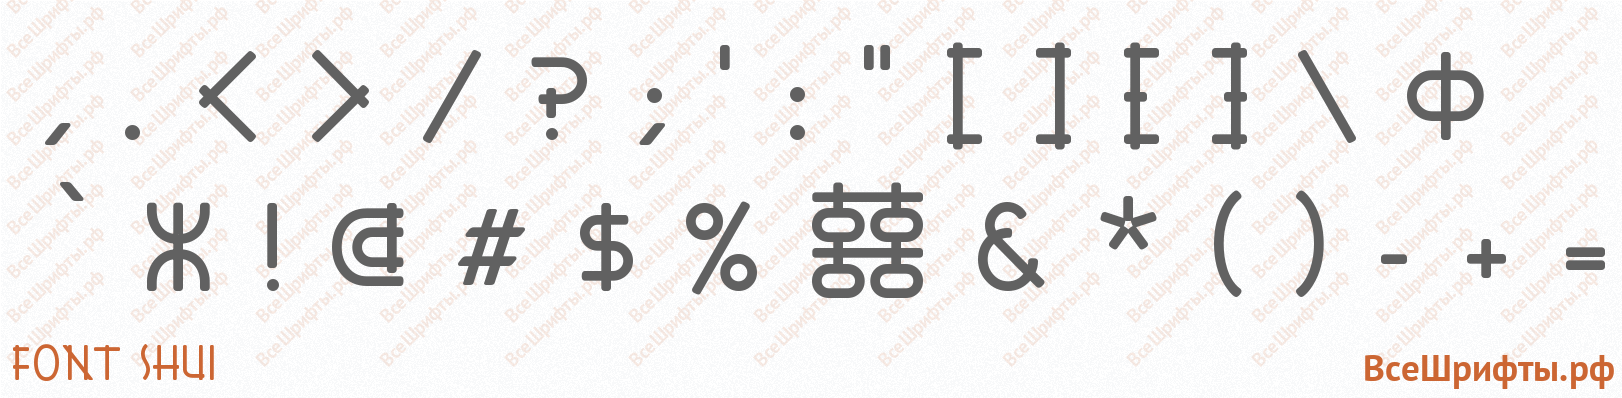 Шрифт Font Shui со знаками препинания и пунктуации